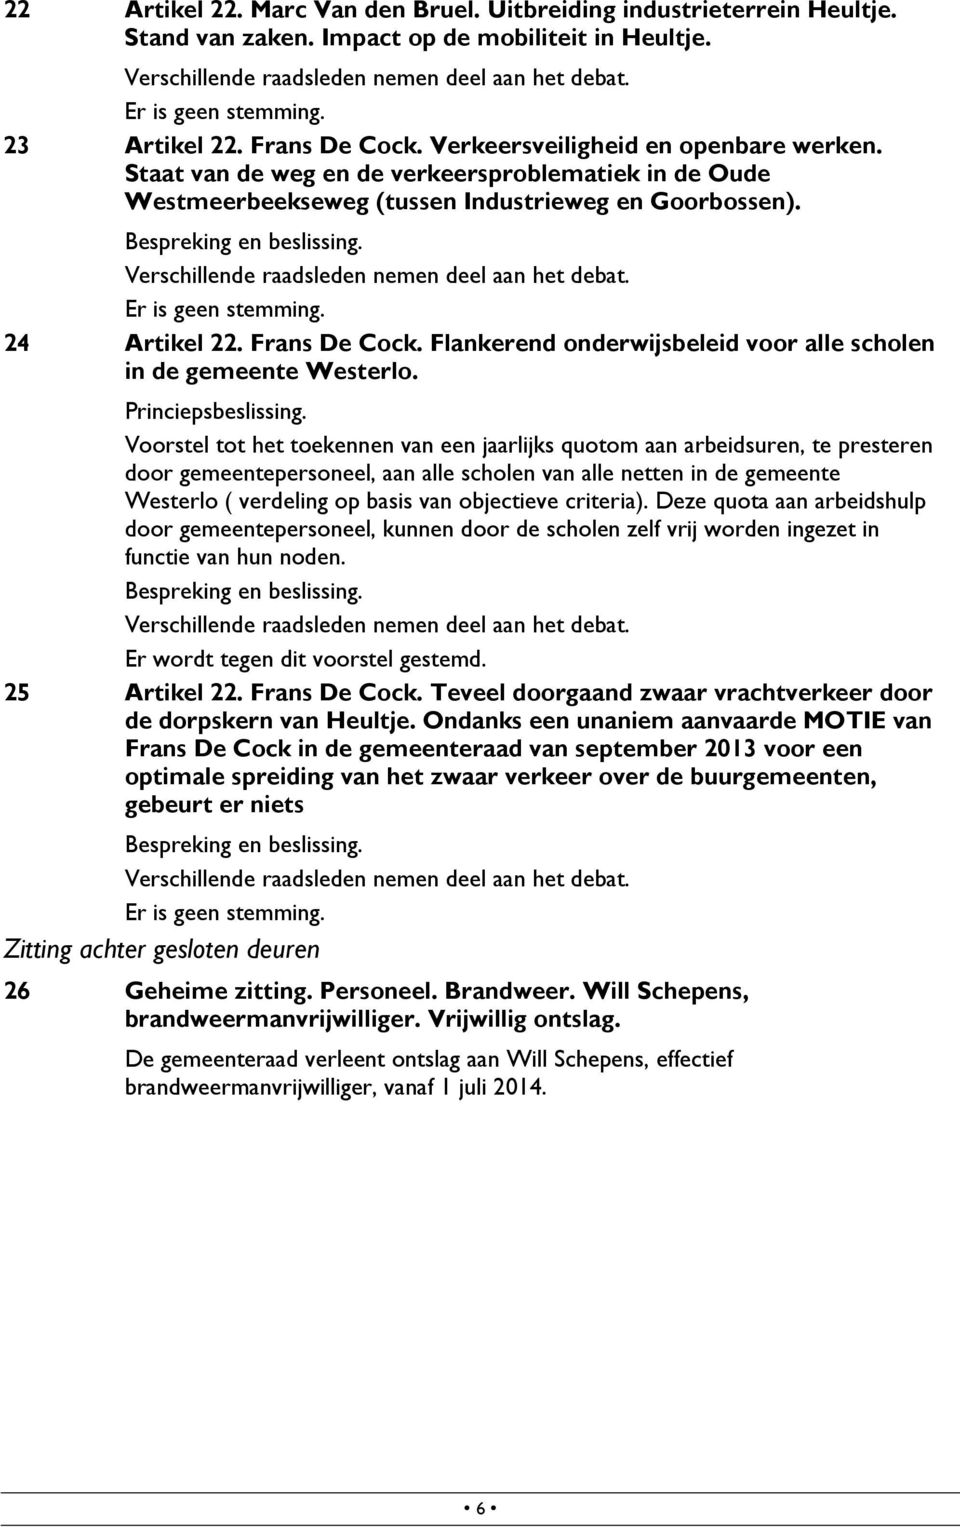 24 Artikel 22. Frans De Cock. Flankerend onderwijsbeleid voor alle scholen in de gemeente Westerlo. Princiepsbeslissing.